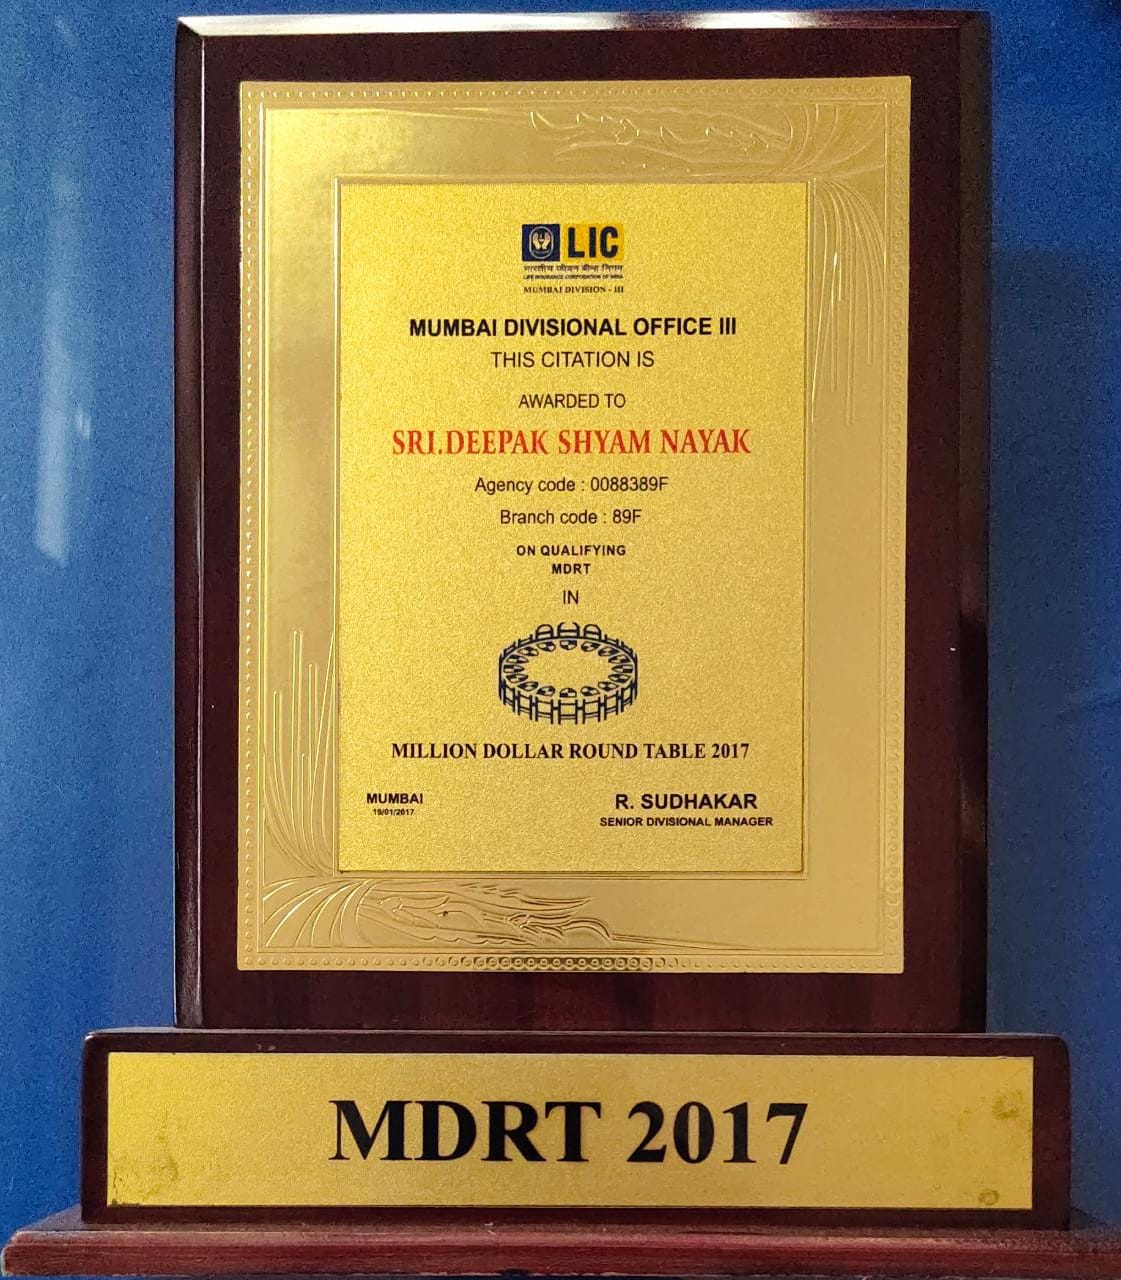 MDRT 2017